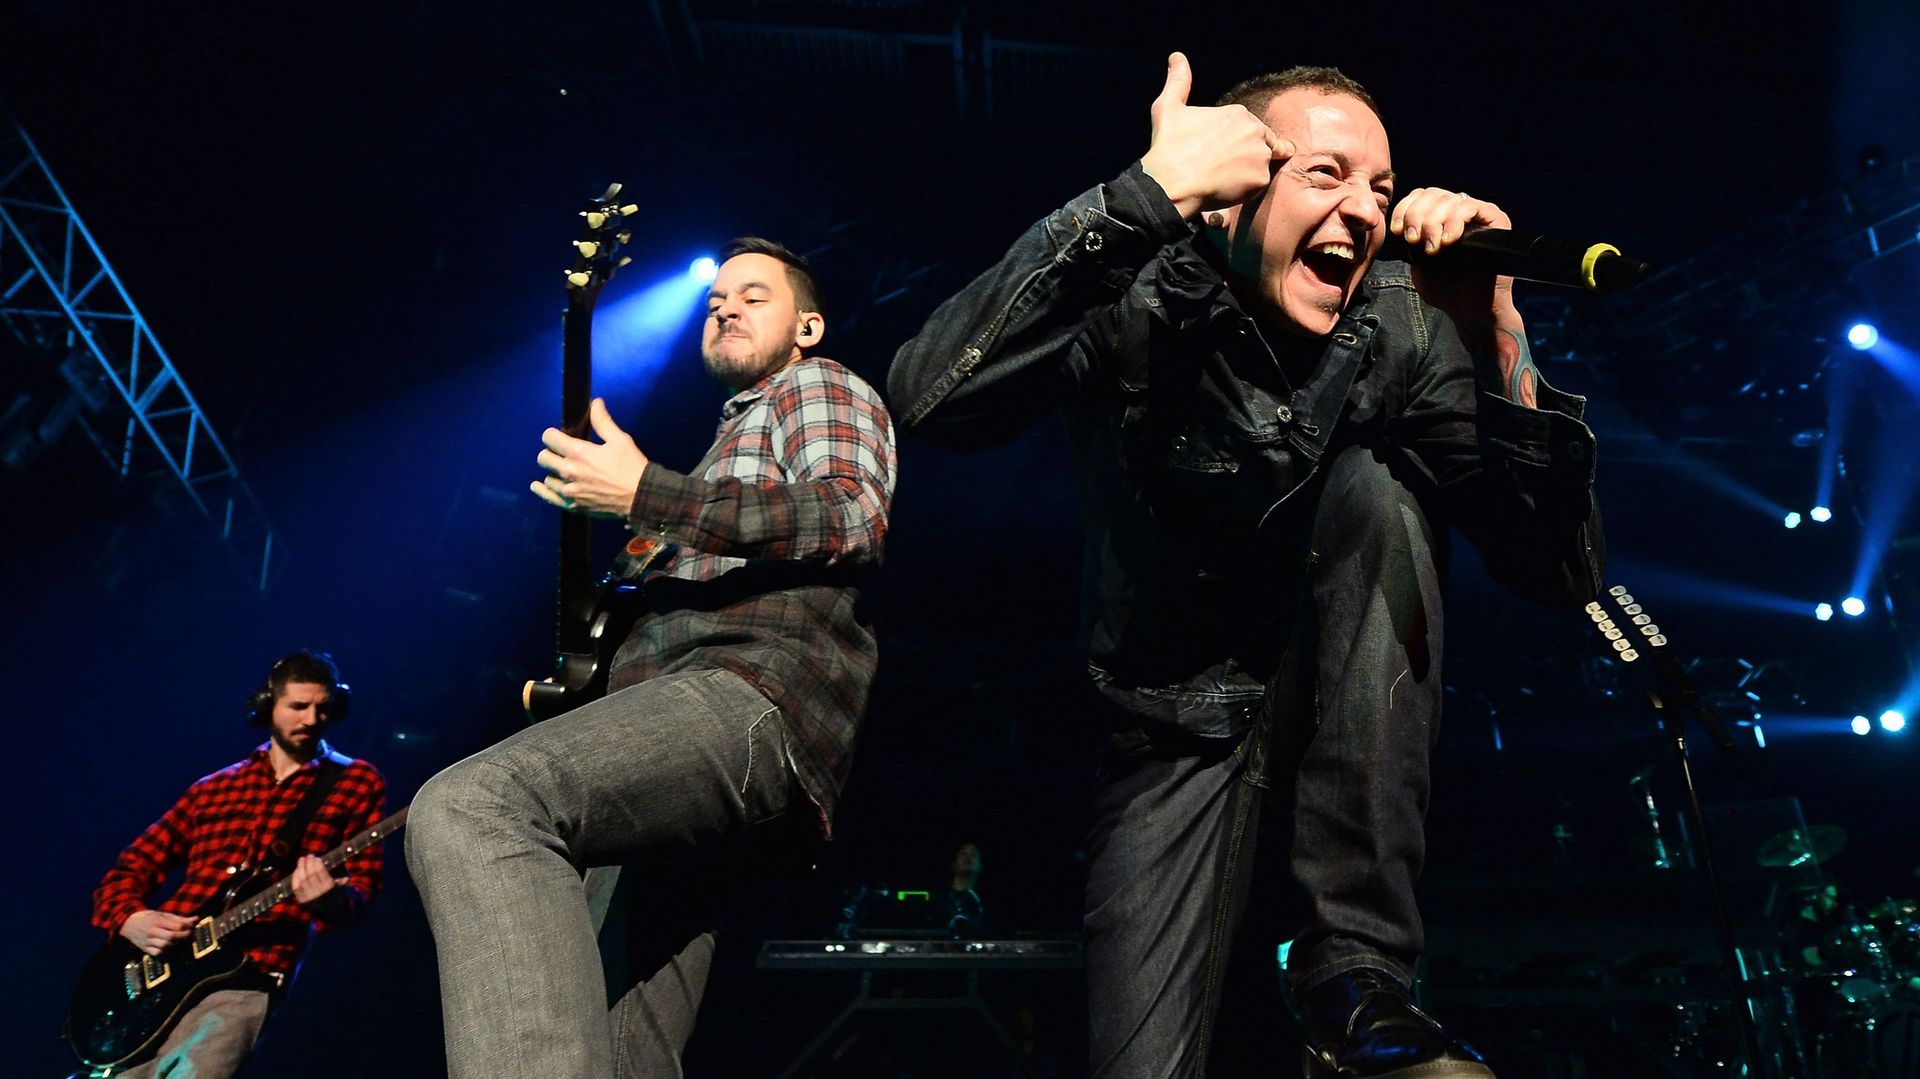 Un documentaire pour les 10 ans de l’album de Linkin Park